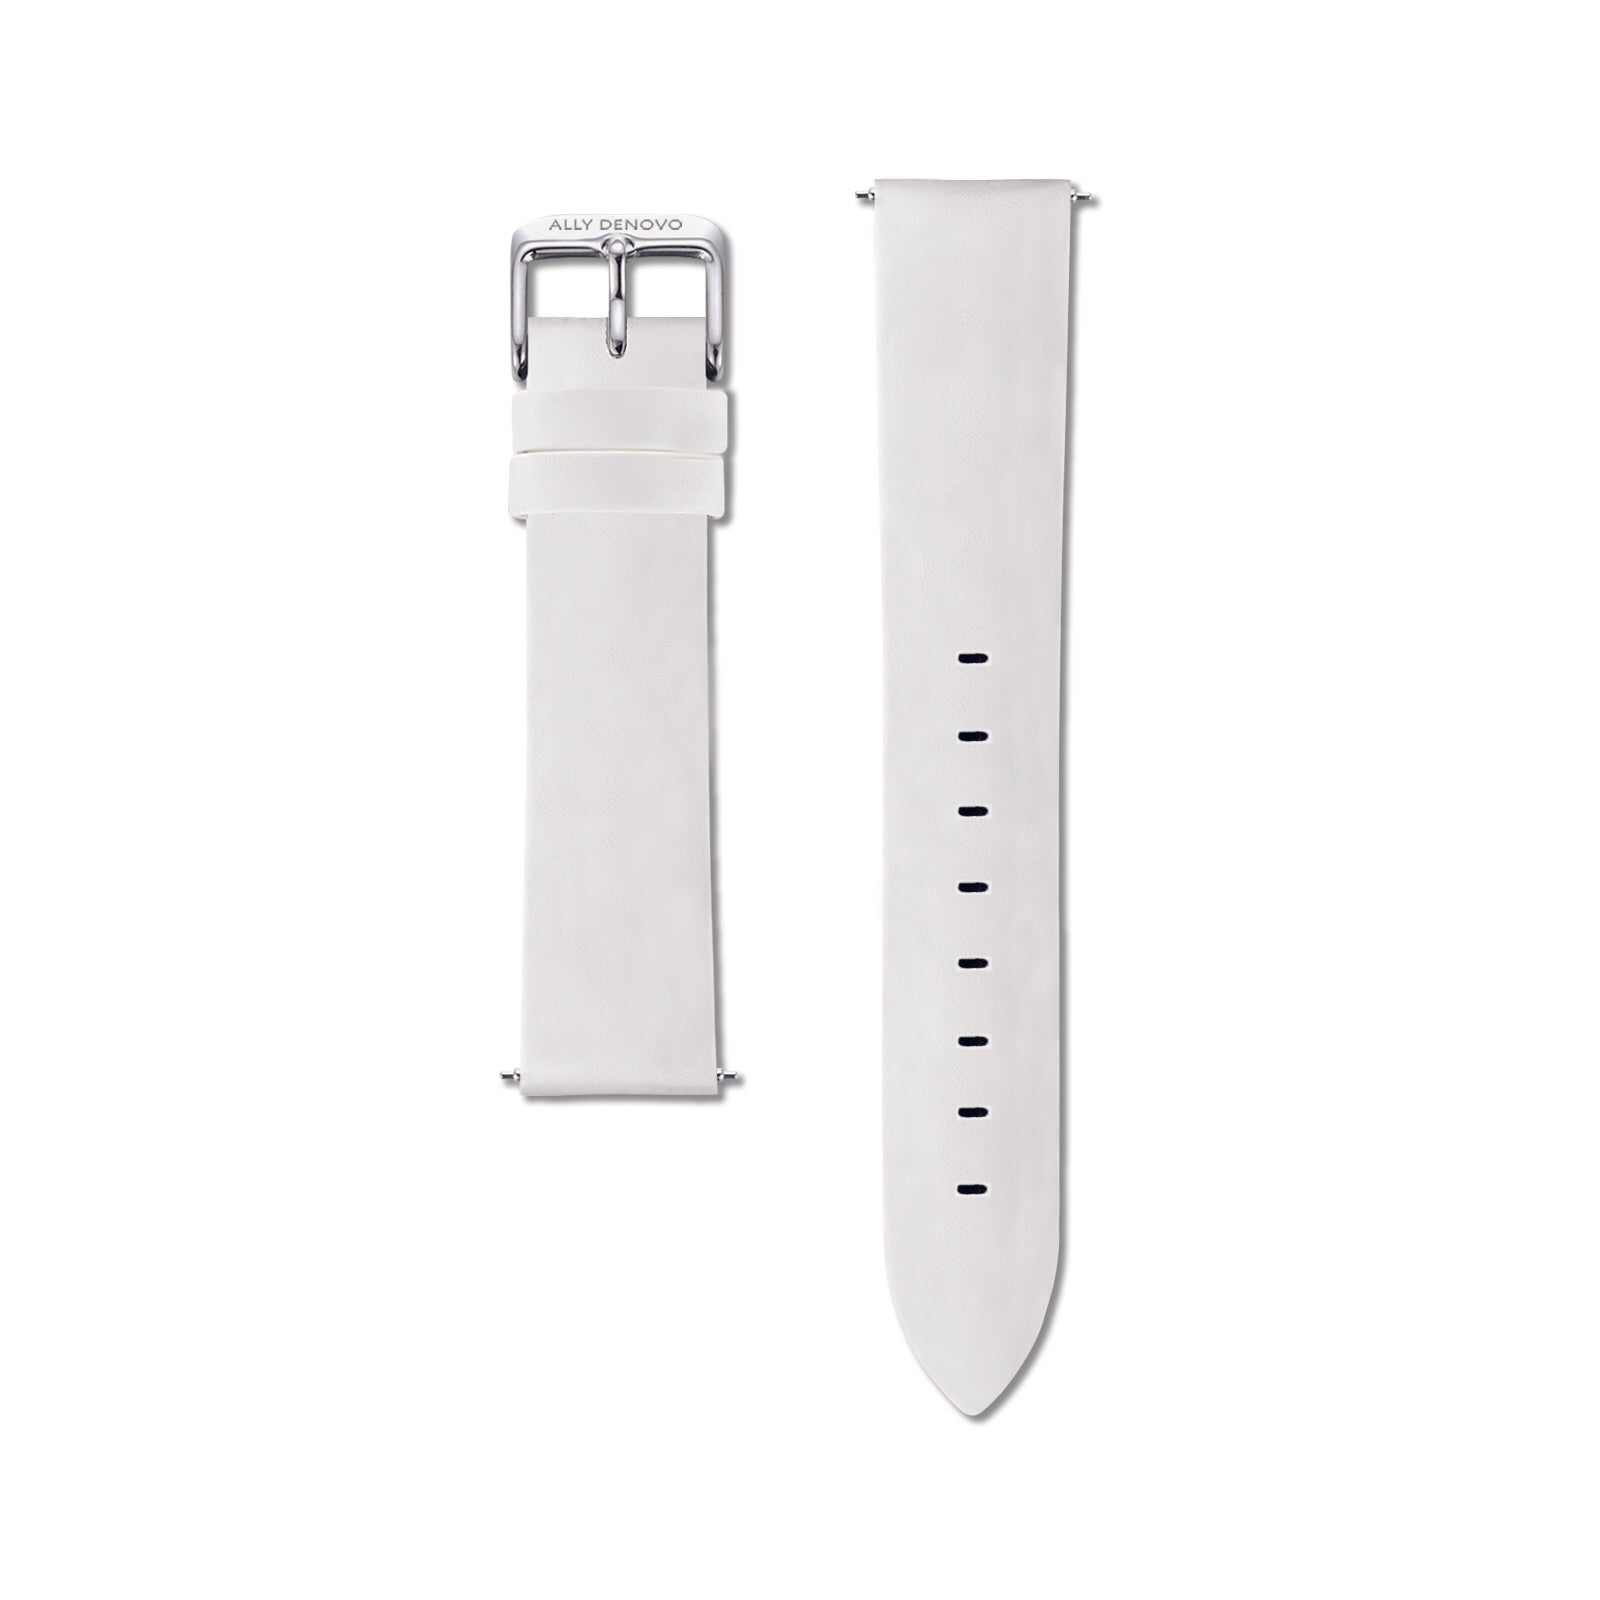 《單獨購買》白色真皮無縫線錶帶18mm銀扣/簡易換錶帶開關式智慧扣環/適用36mm錶盤